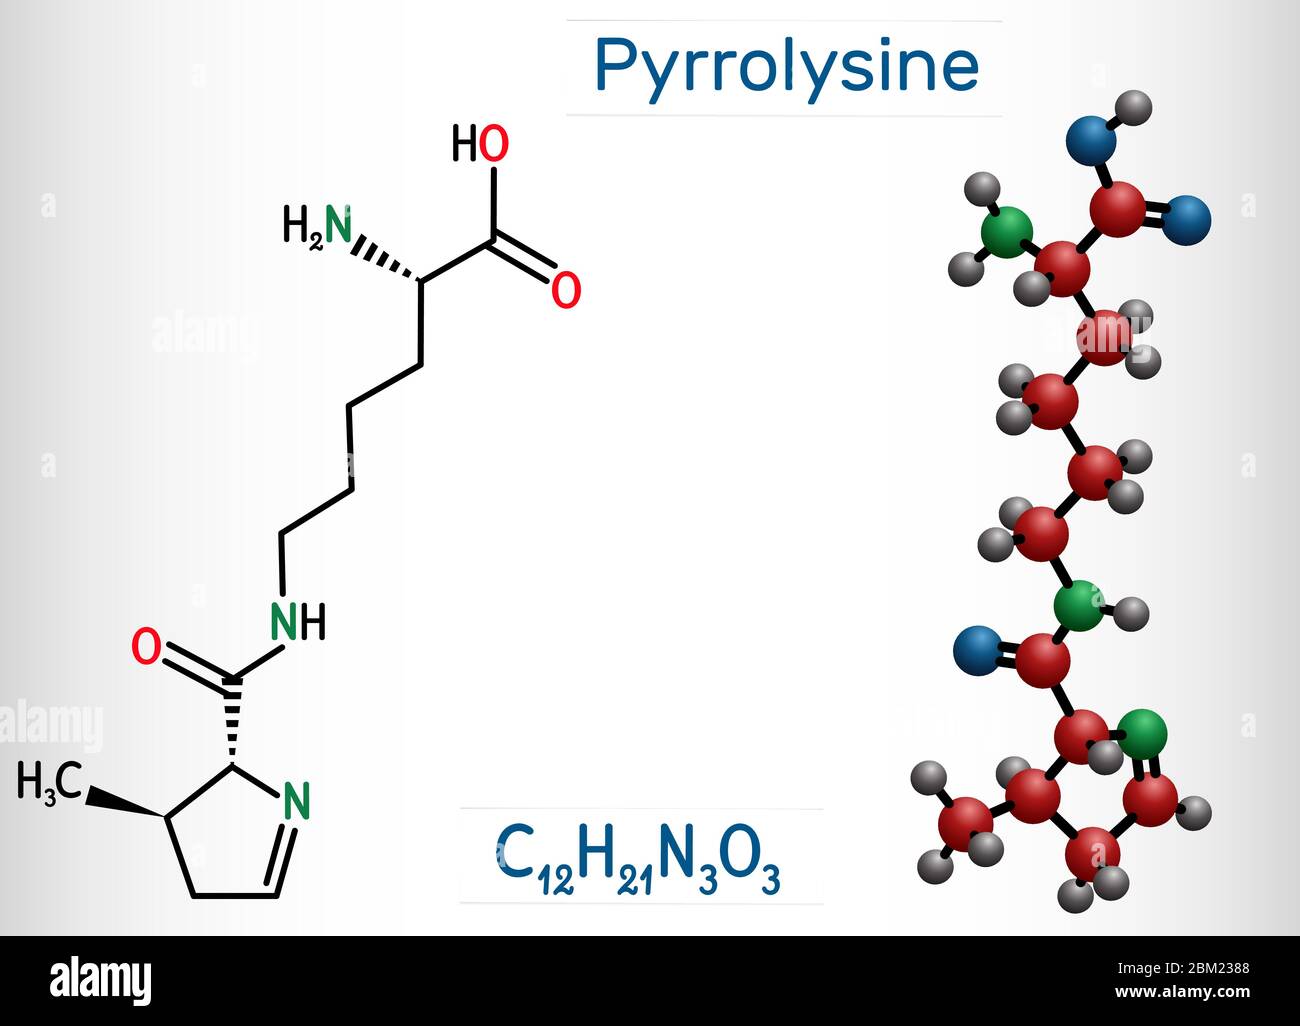 Pirrolisina, L-pirrolisina, PYL, molécula C12H21N3O3. Es aminoácido, se utiliza en la biosíntesis de proteínas. Fórmula química estructural y molécula Ilustración del Vector